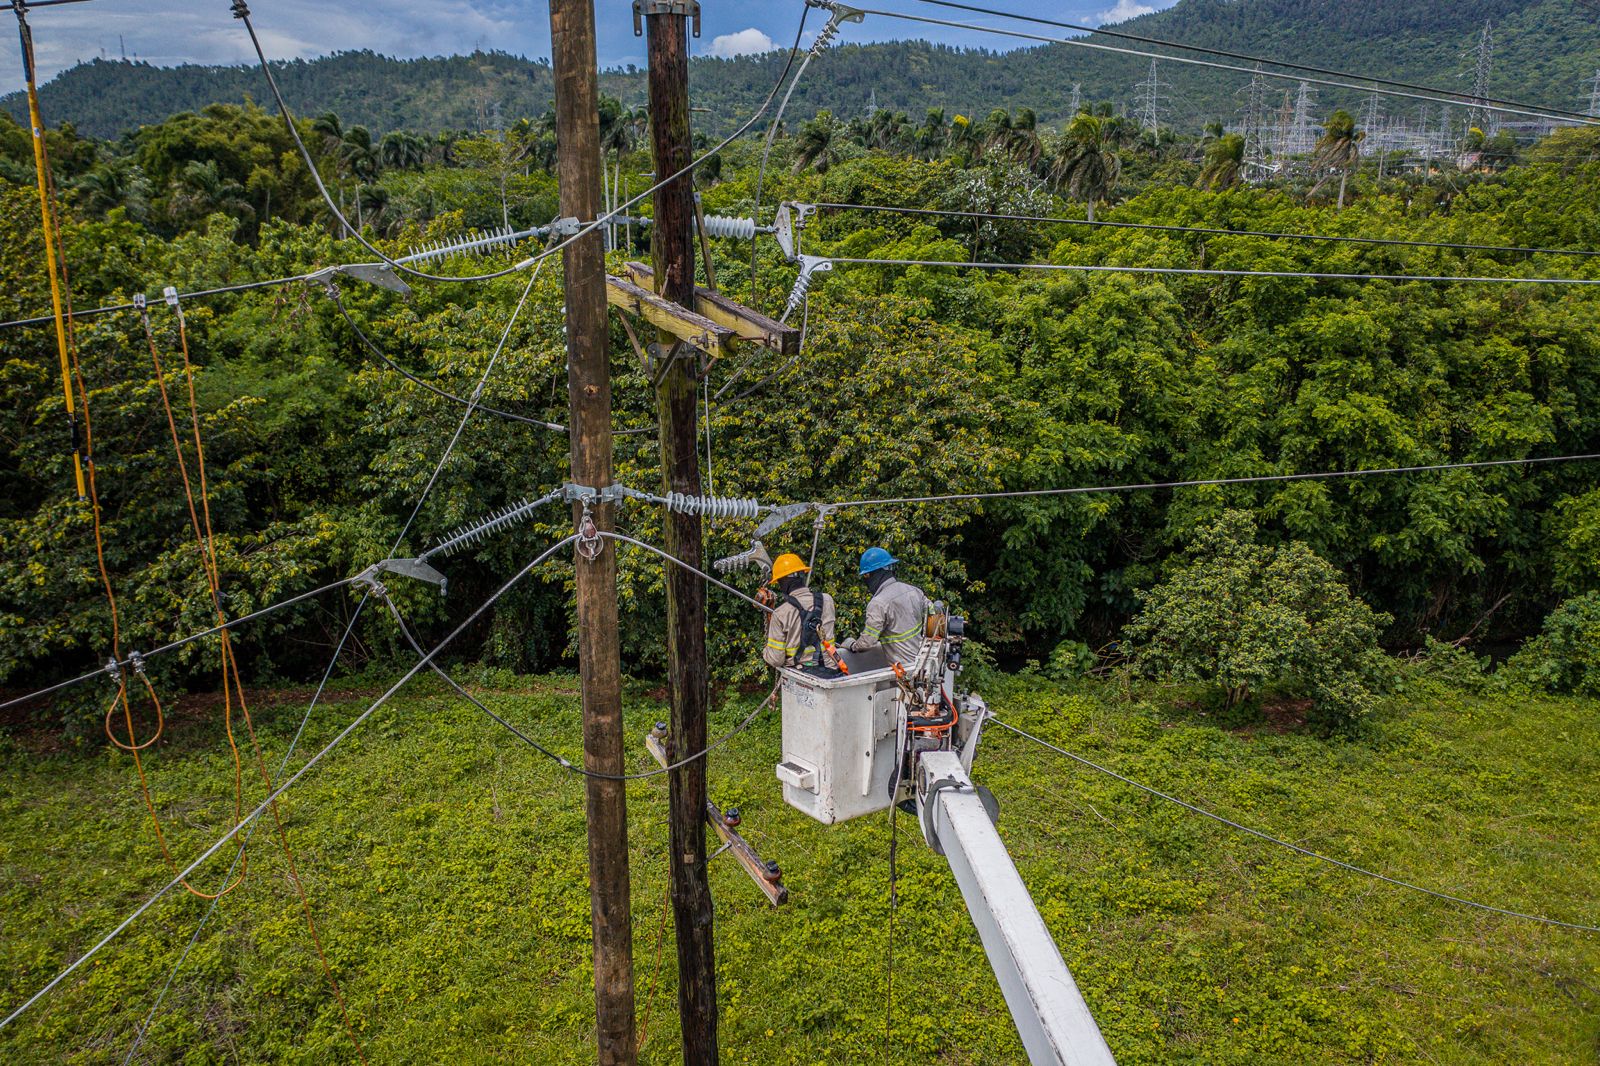 REPÚBLICA DOMINICANA: ETED realizará mantenimiento este miércoles en la línea de transmisión 69 kV Canabacoa - Playa Dorada